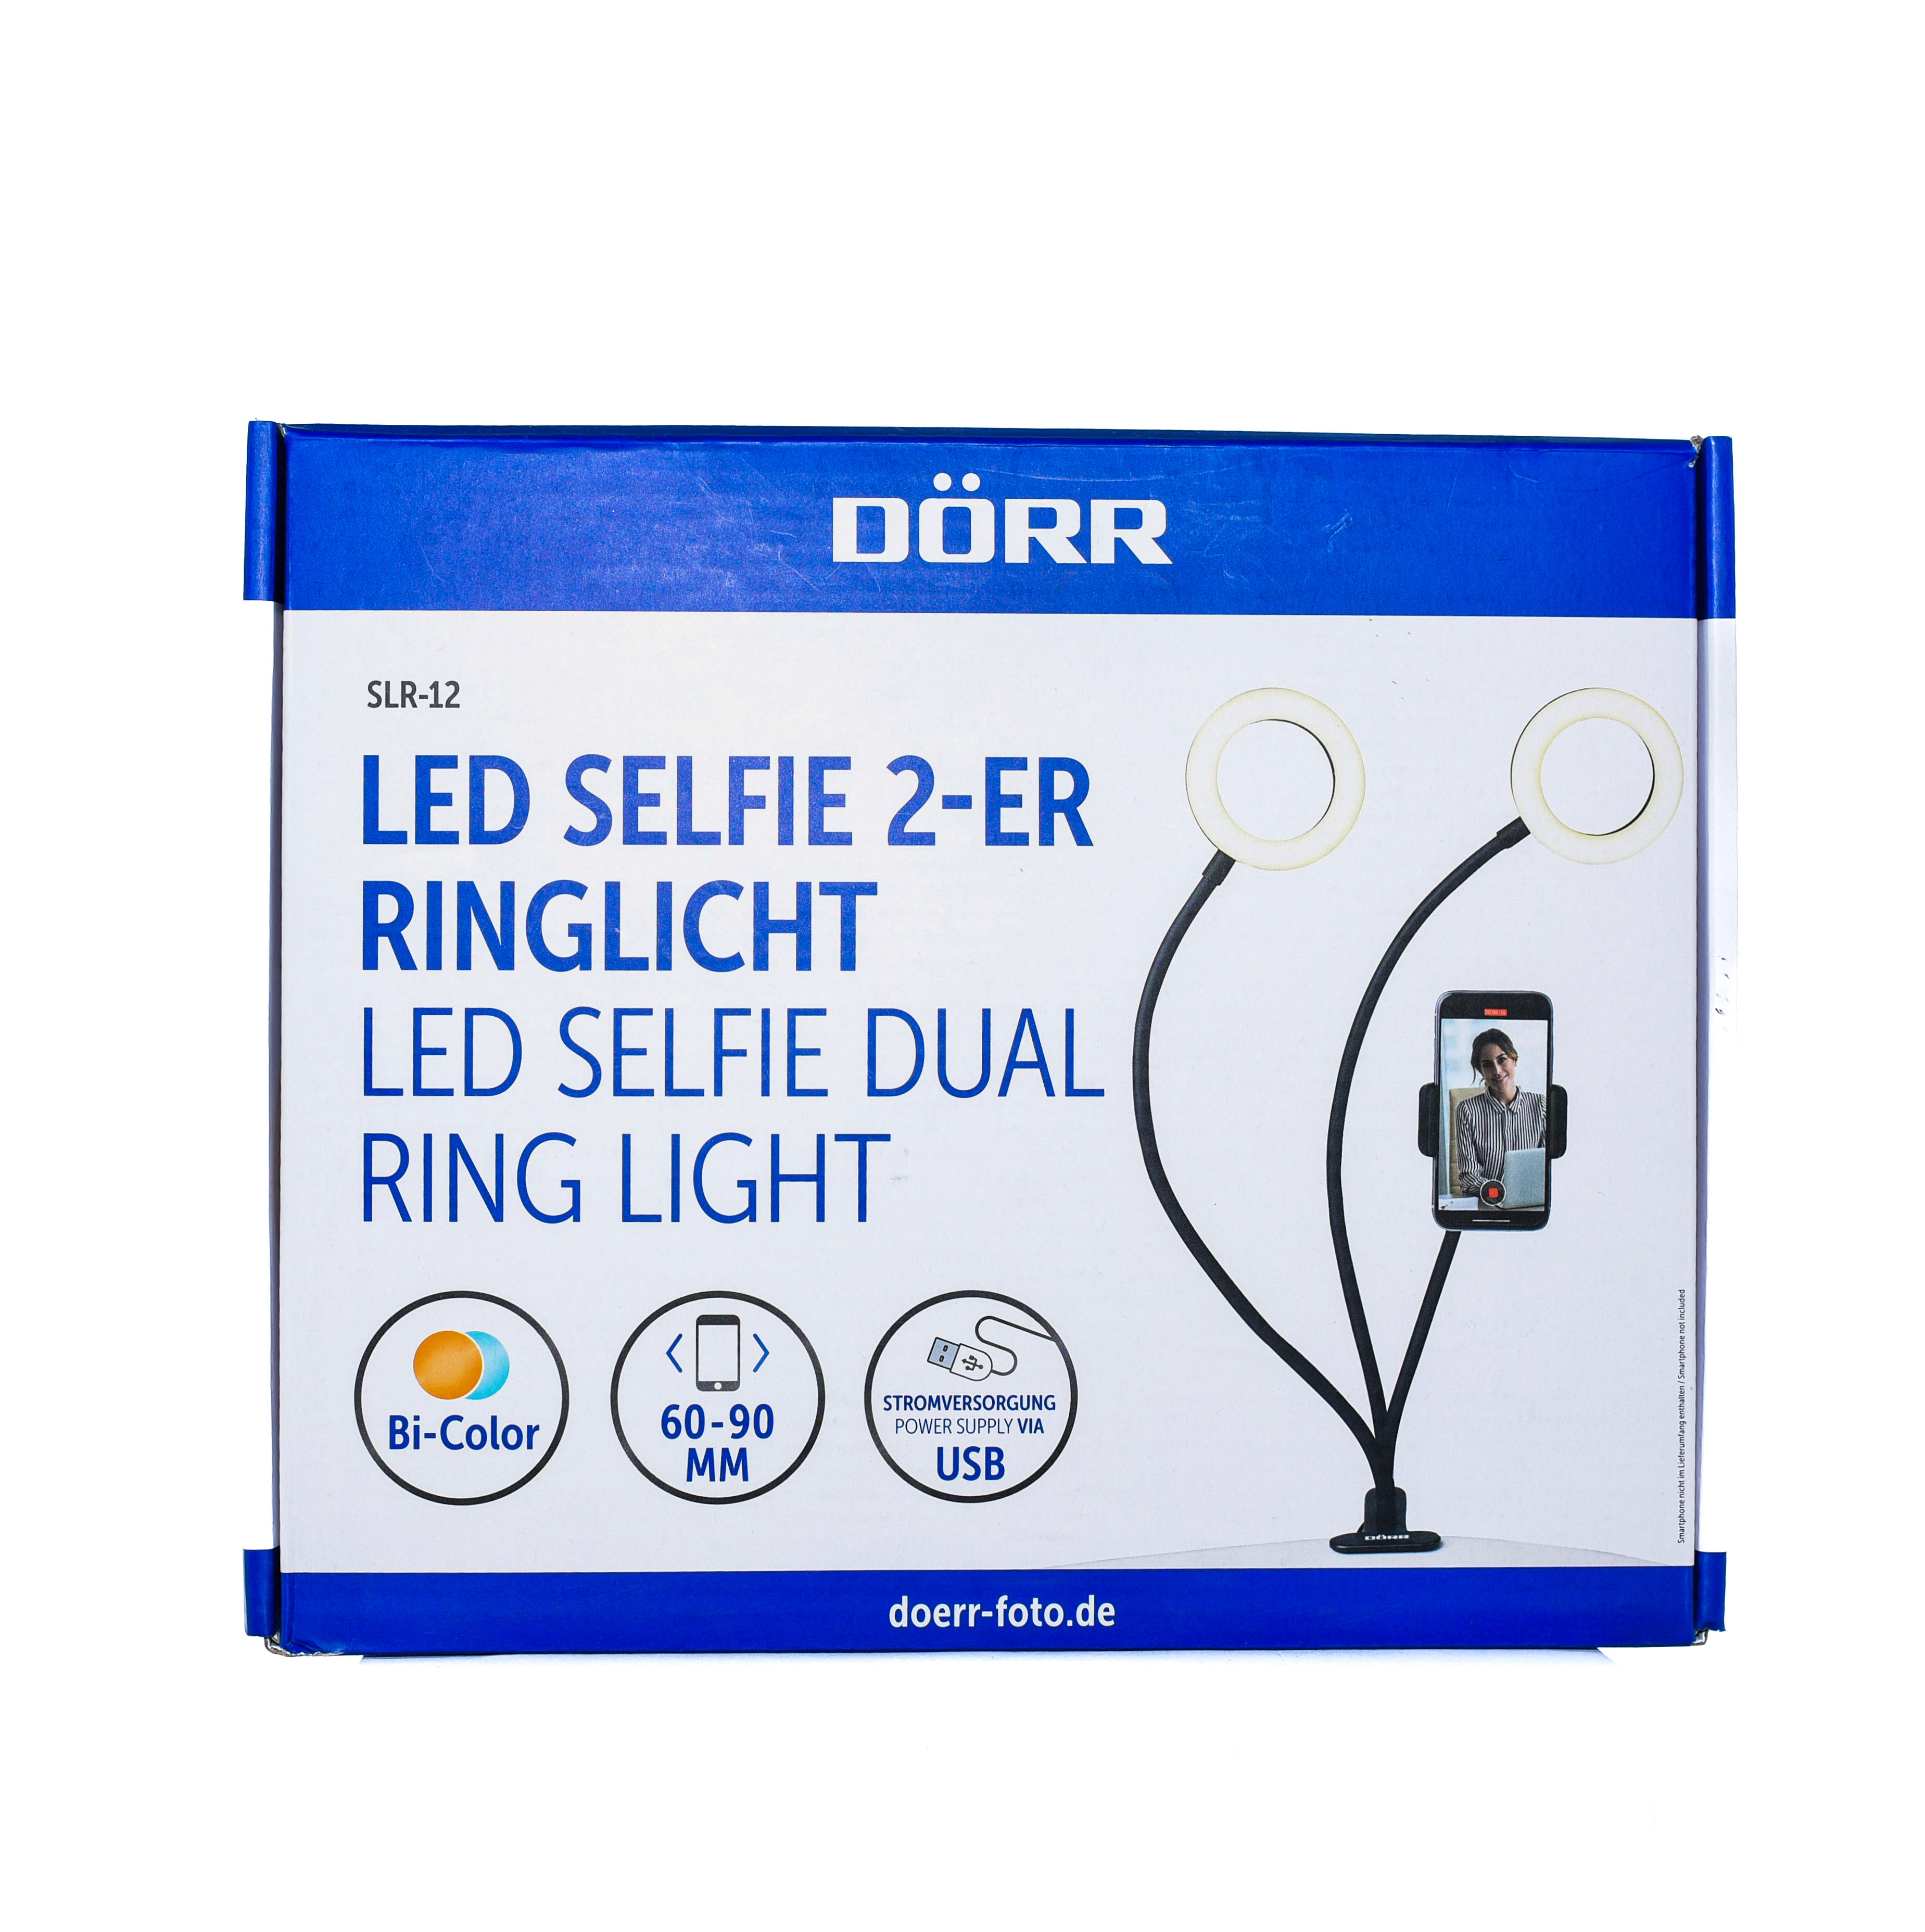 Dorr LED Selfie 2-ER Ringlight SLR-12 Bi-Colour